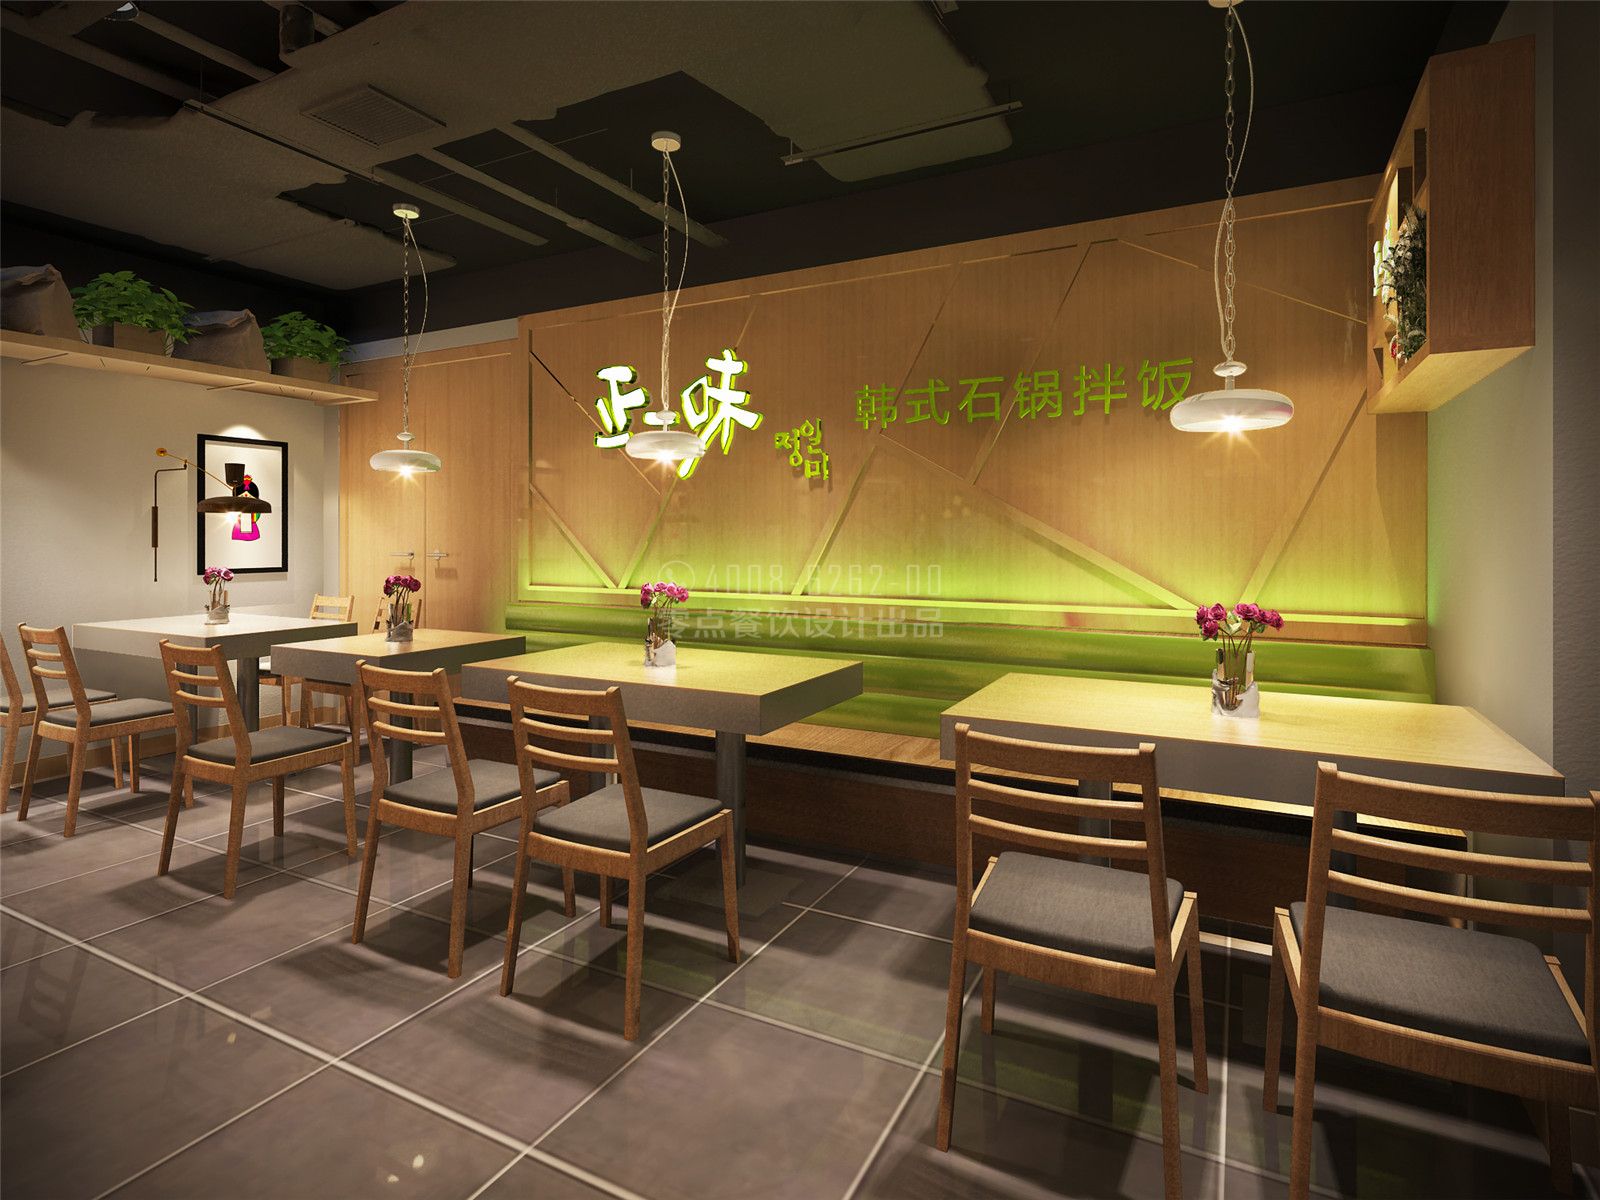 正一味-五路居店 - 餐饮装修公司丨餐饮设计丨餐厅设计公司--北京零点空间装饰设计有限公司